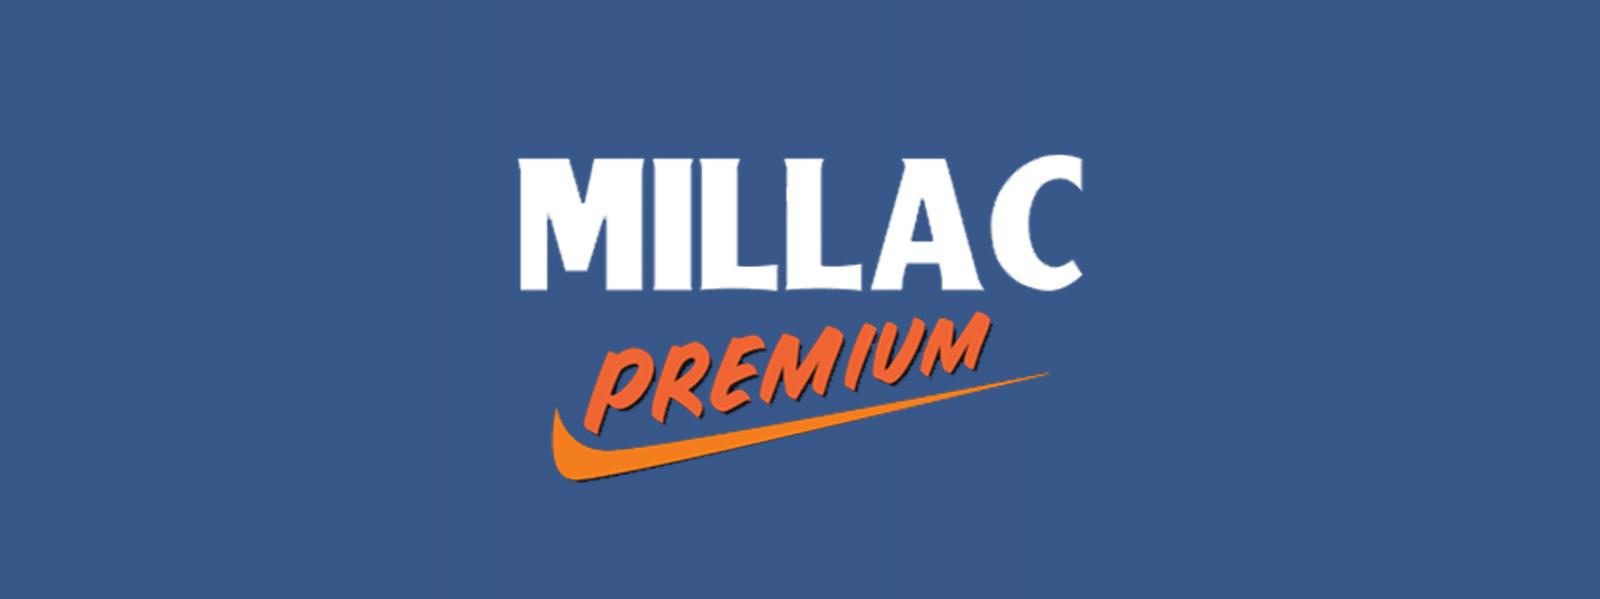 Millac Premium